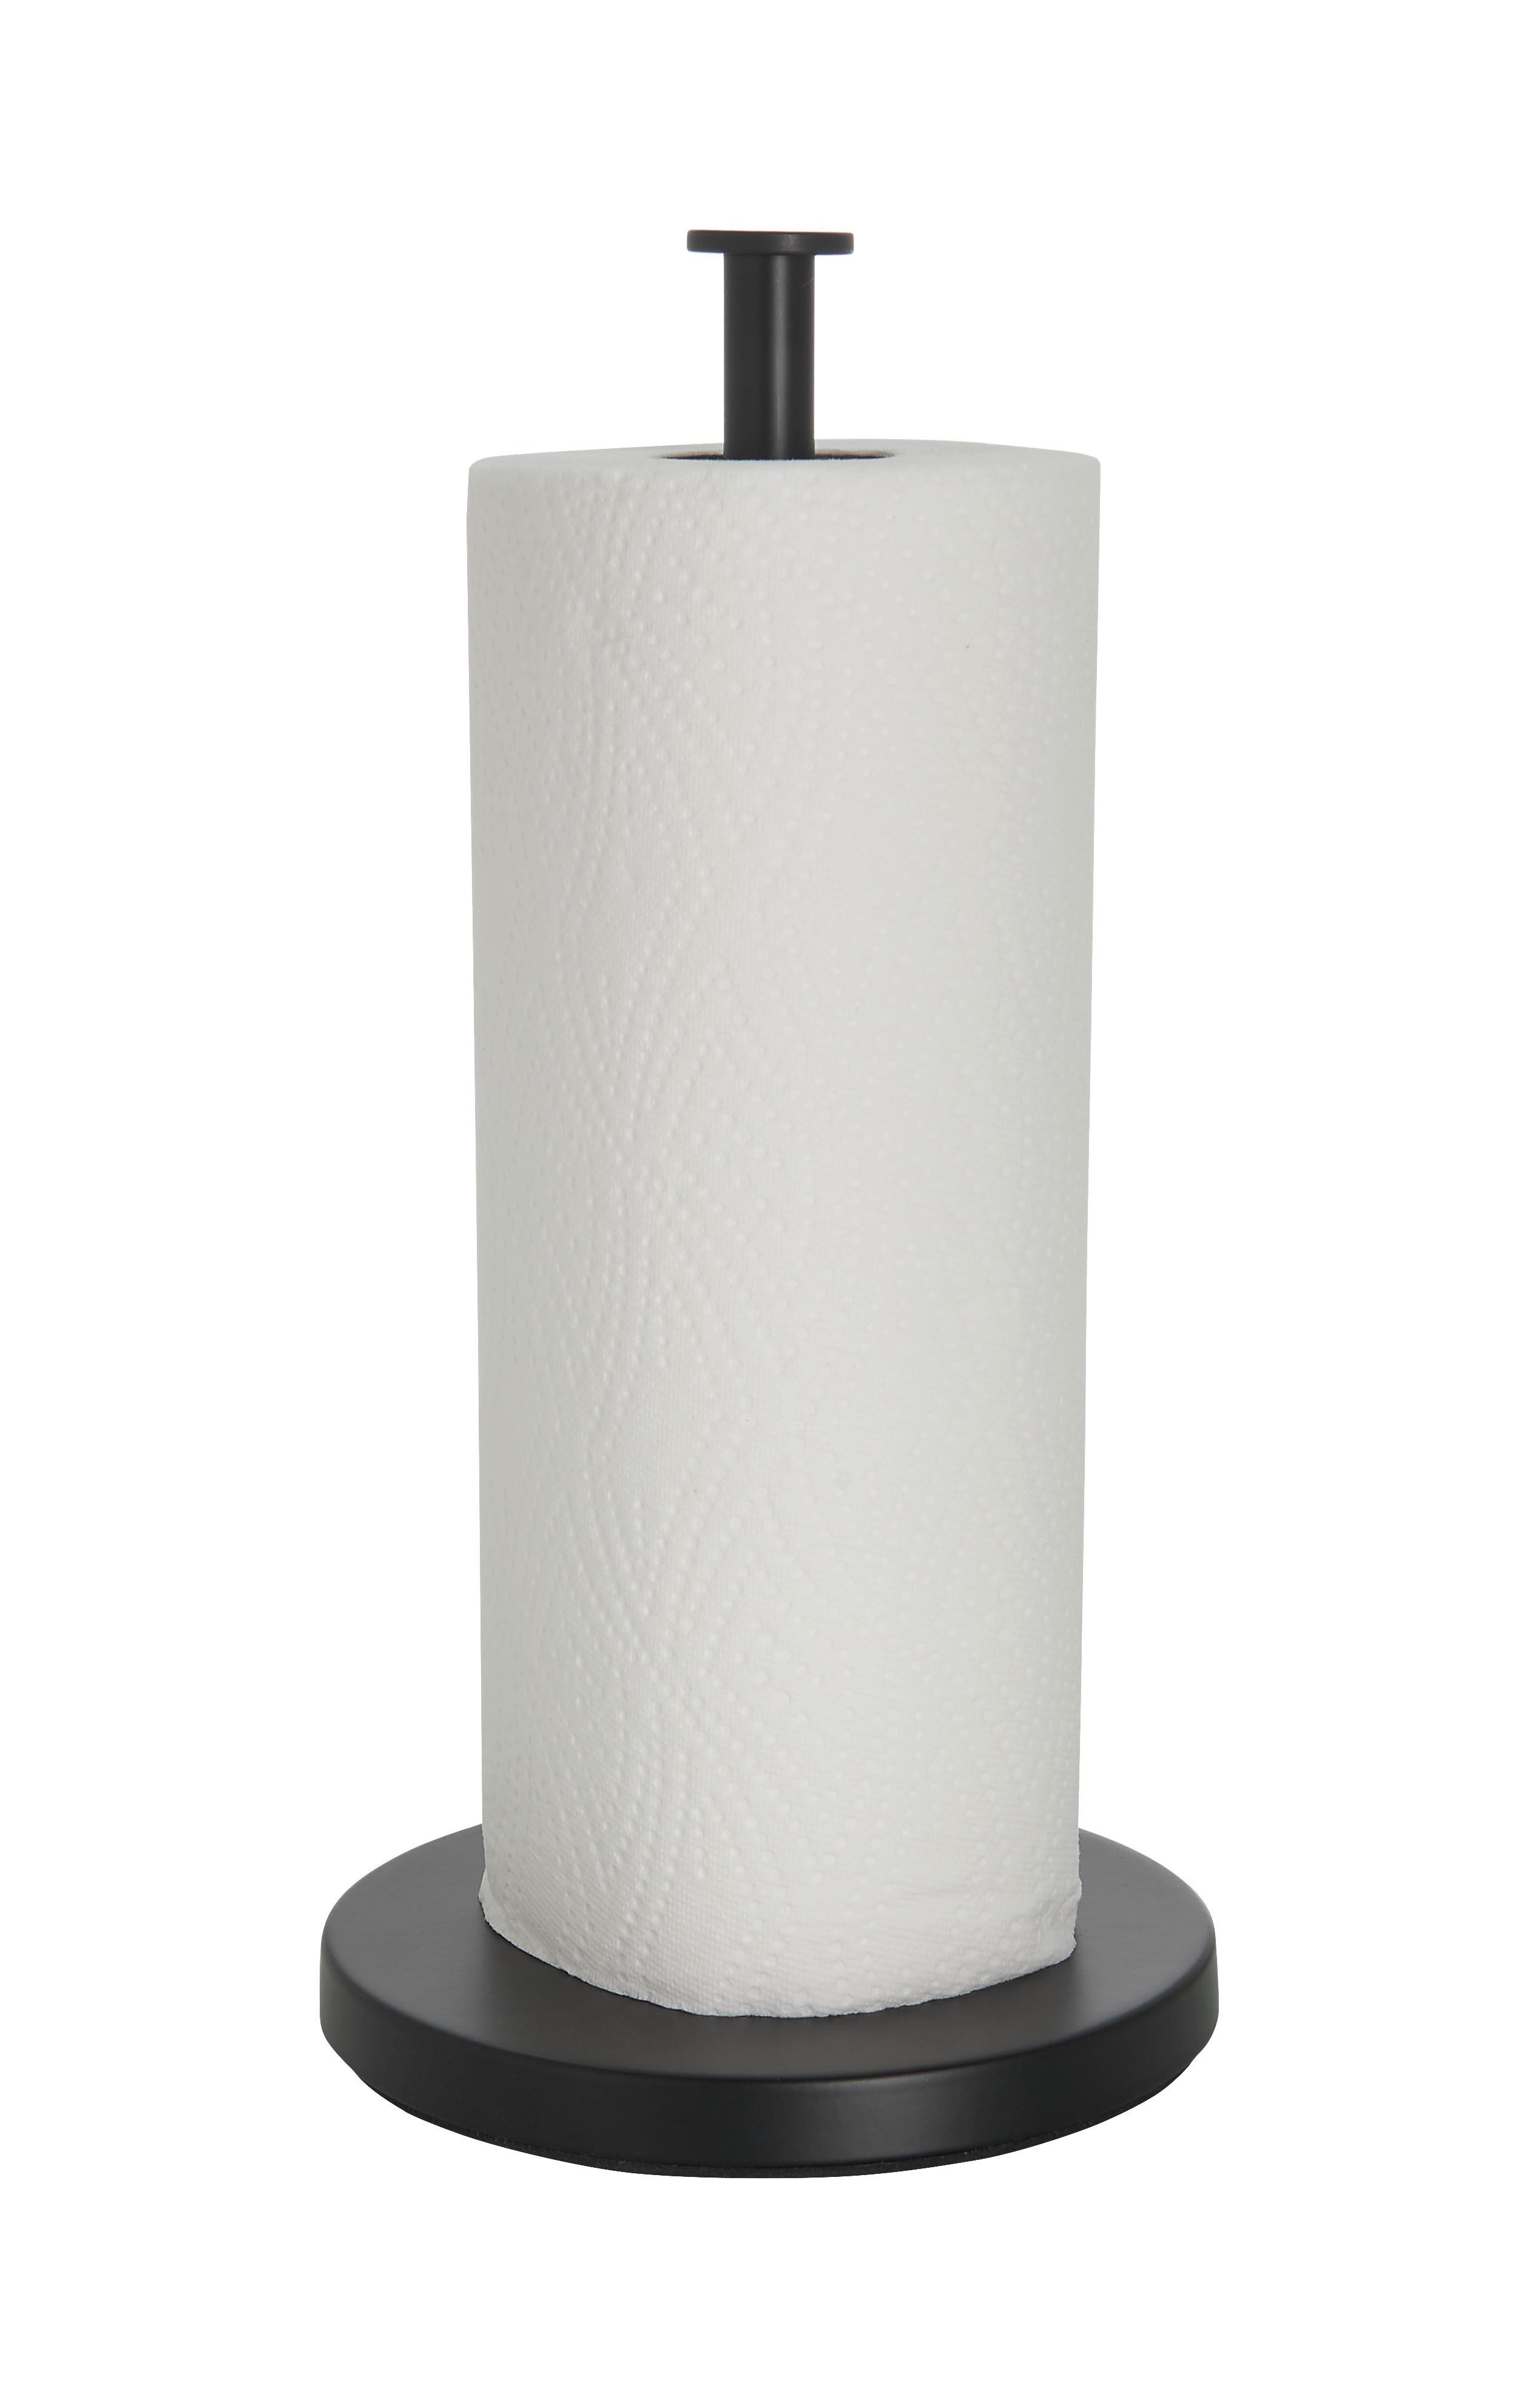 weiß gebürstet polierter stahl bulkpack multiflat toilettenpapier taschentuchspender